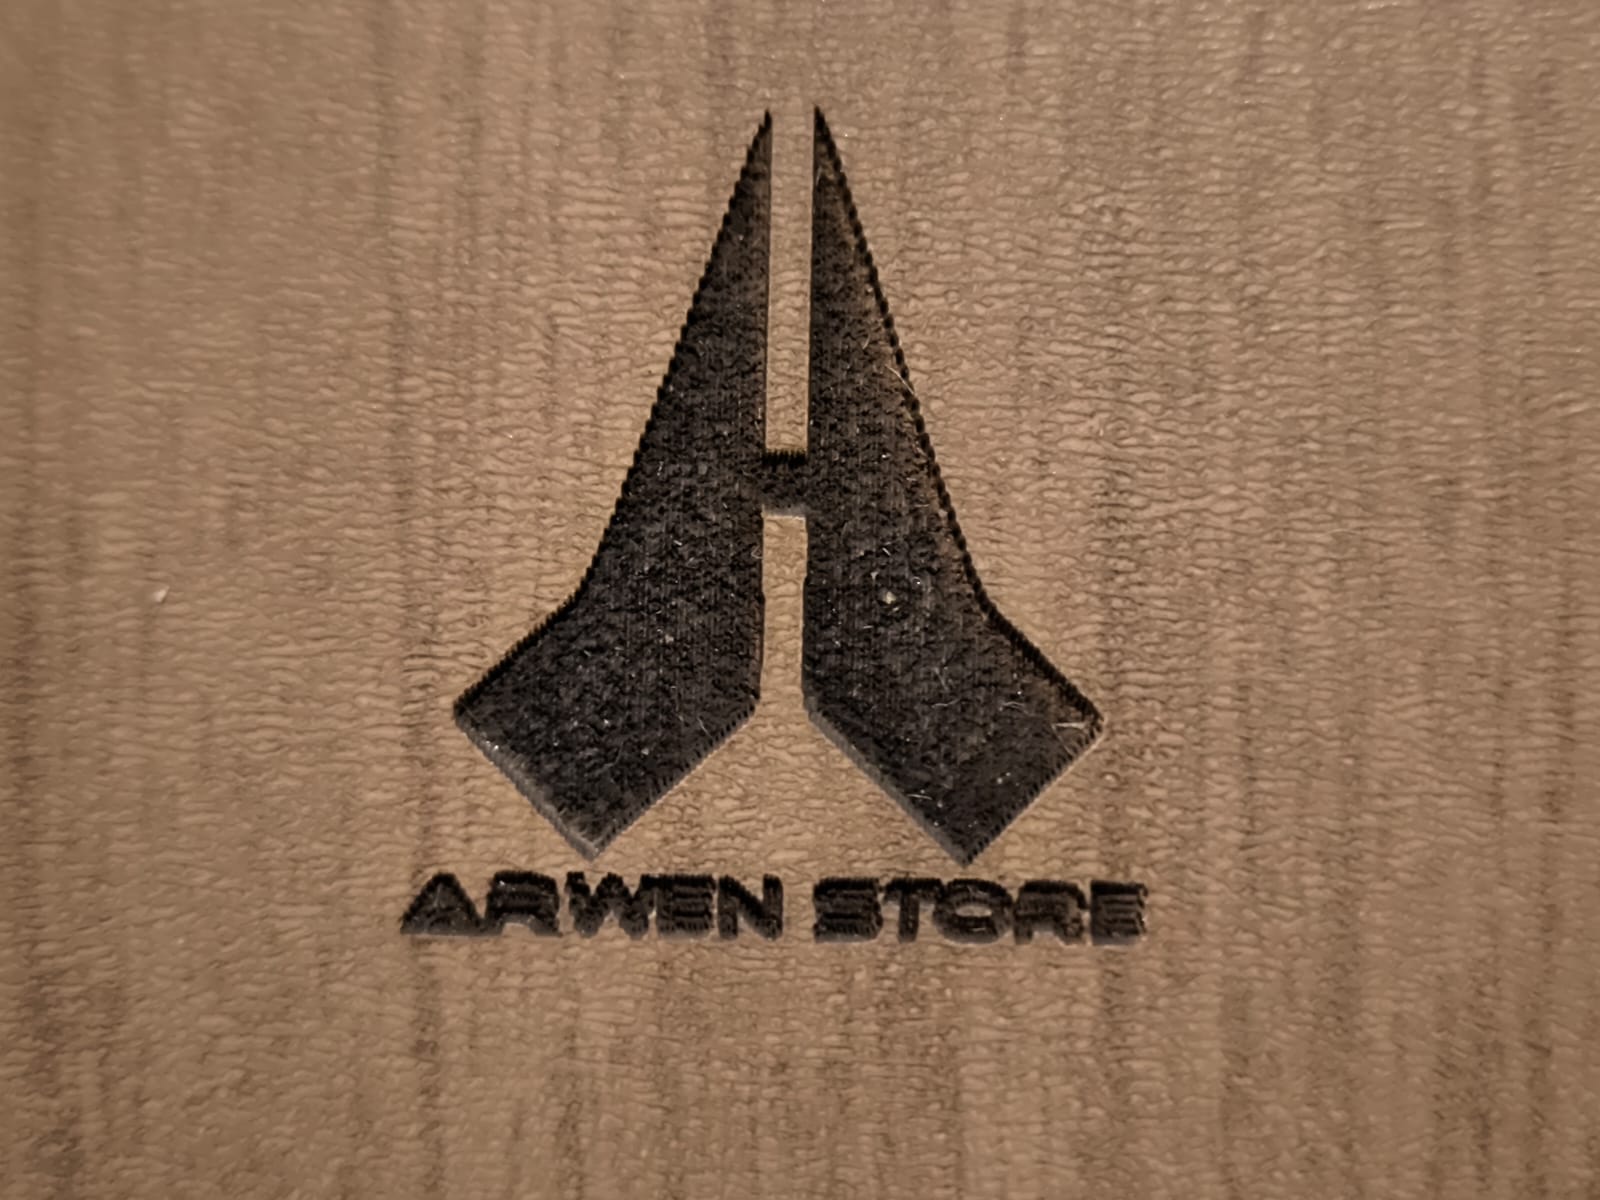 ArwenStore